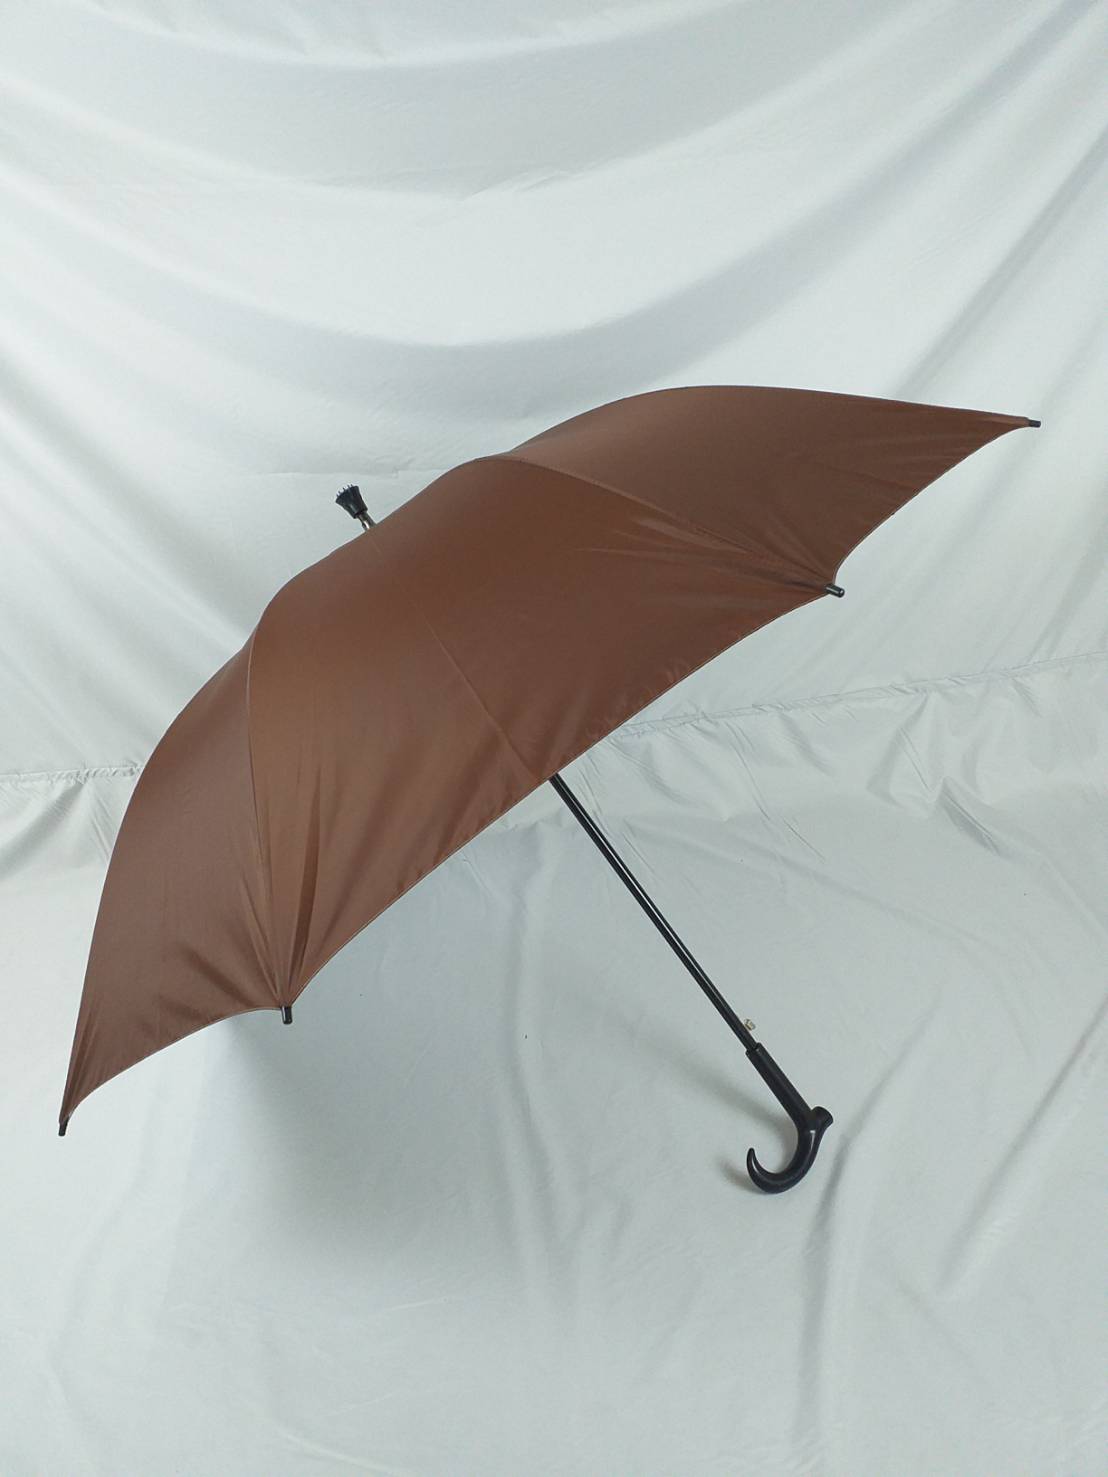 ร่มกอล์ฟ ร่มคันใหญ่ เปิดออโต้ รหัส28141-2 แกนเหล็ก ผ้าสีดำ ด้ามไม้เท้า ร่มกันแดด กันน้ำ ร่มดำ ผลิตในไทย golf umbrella